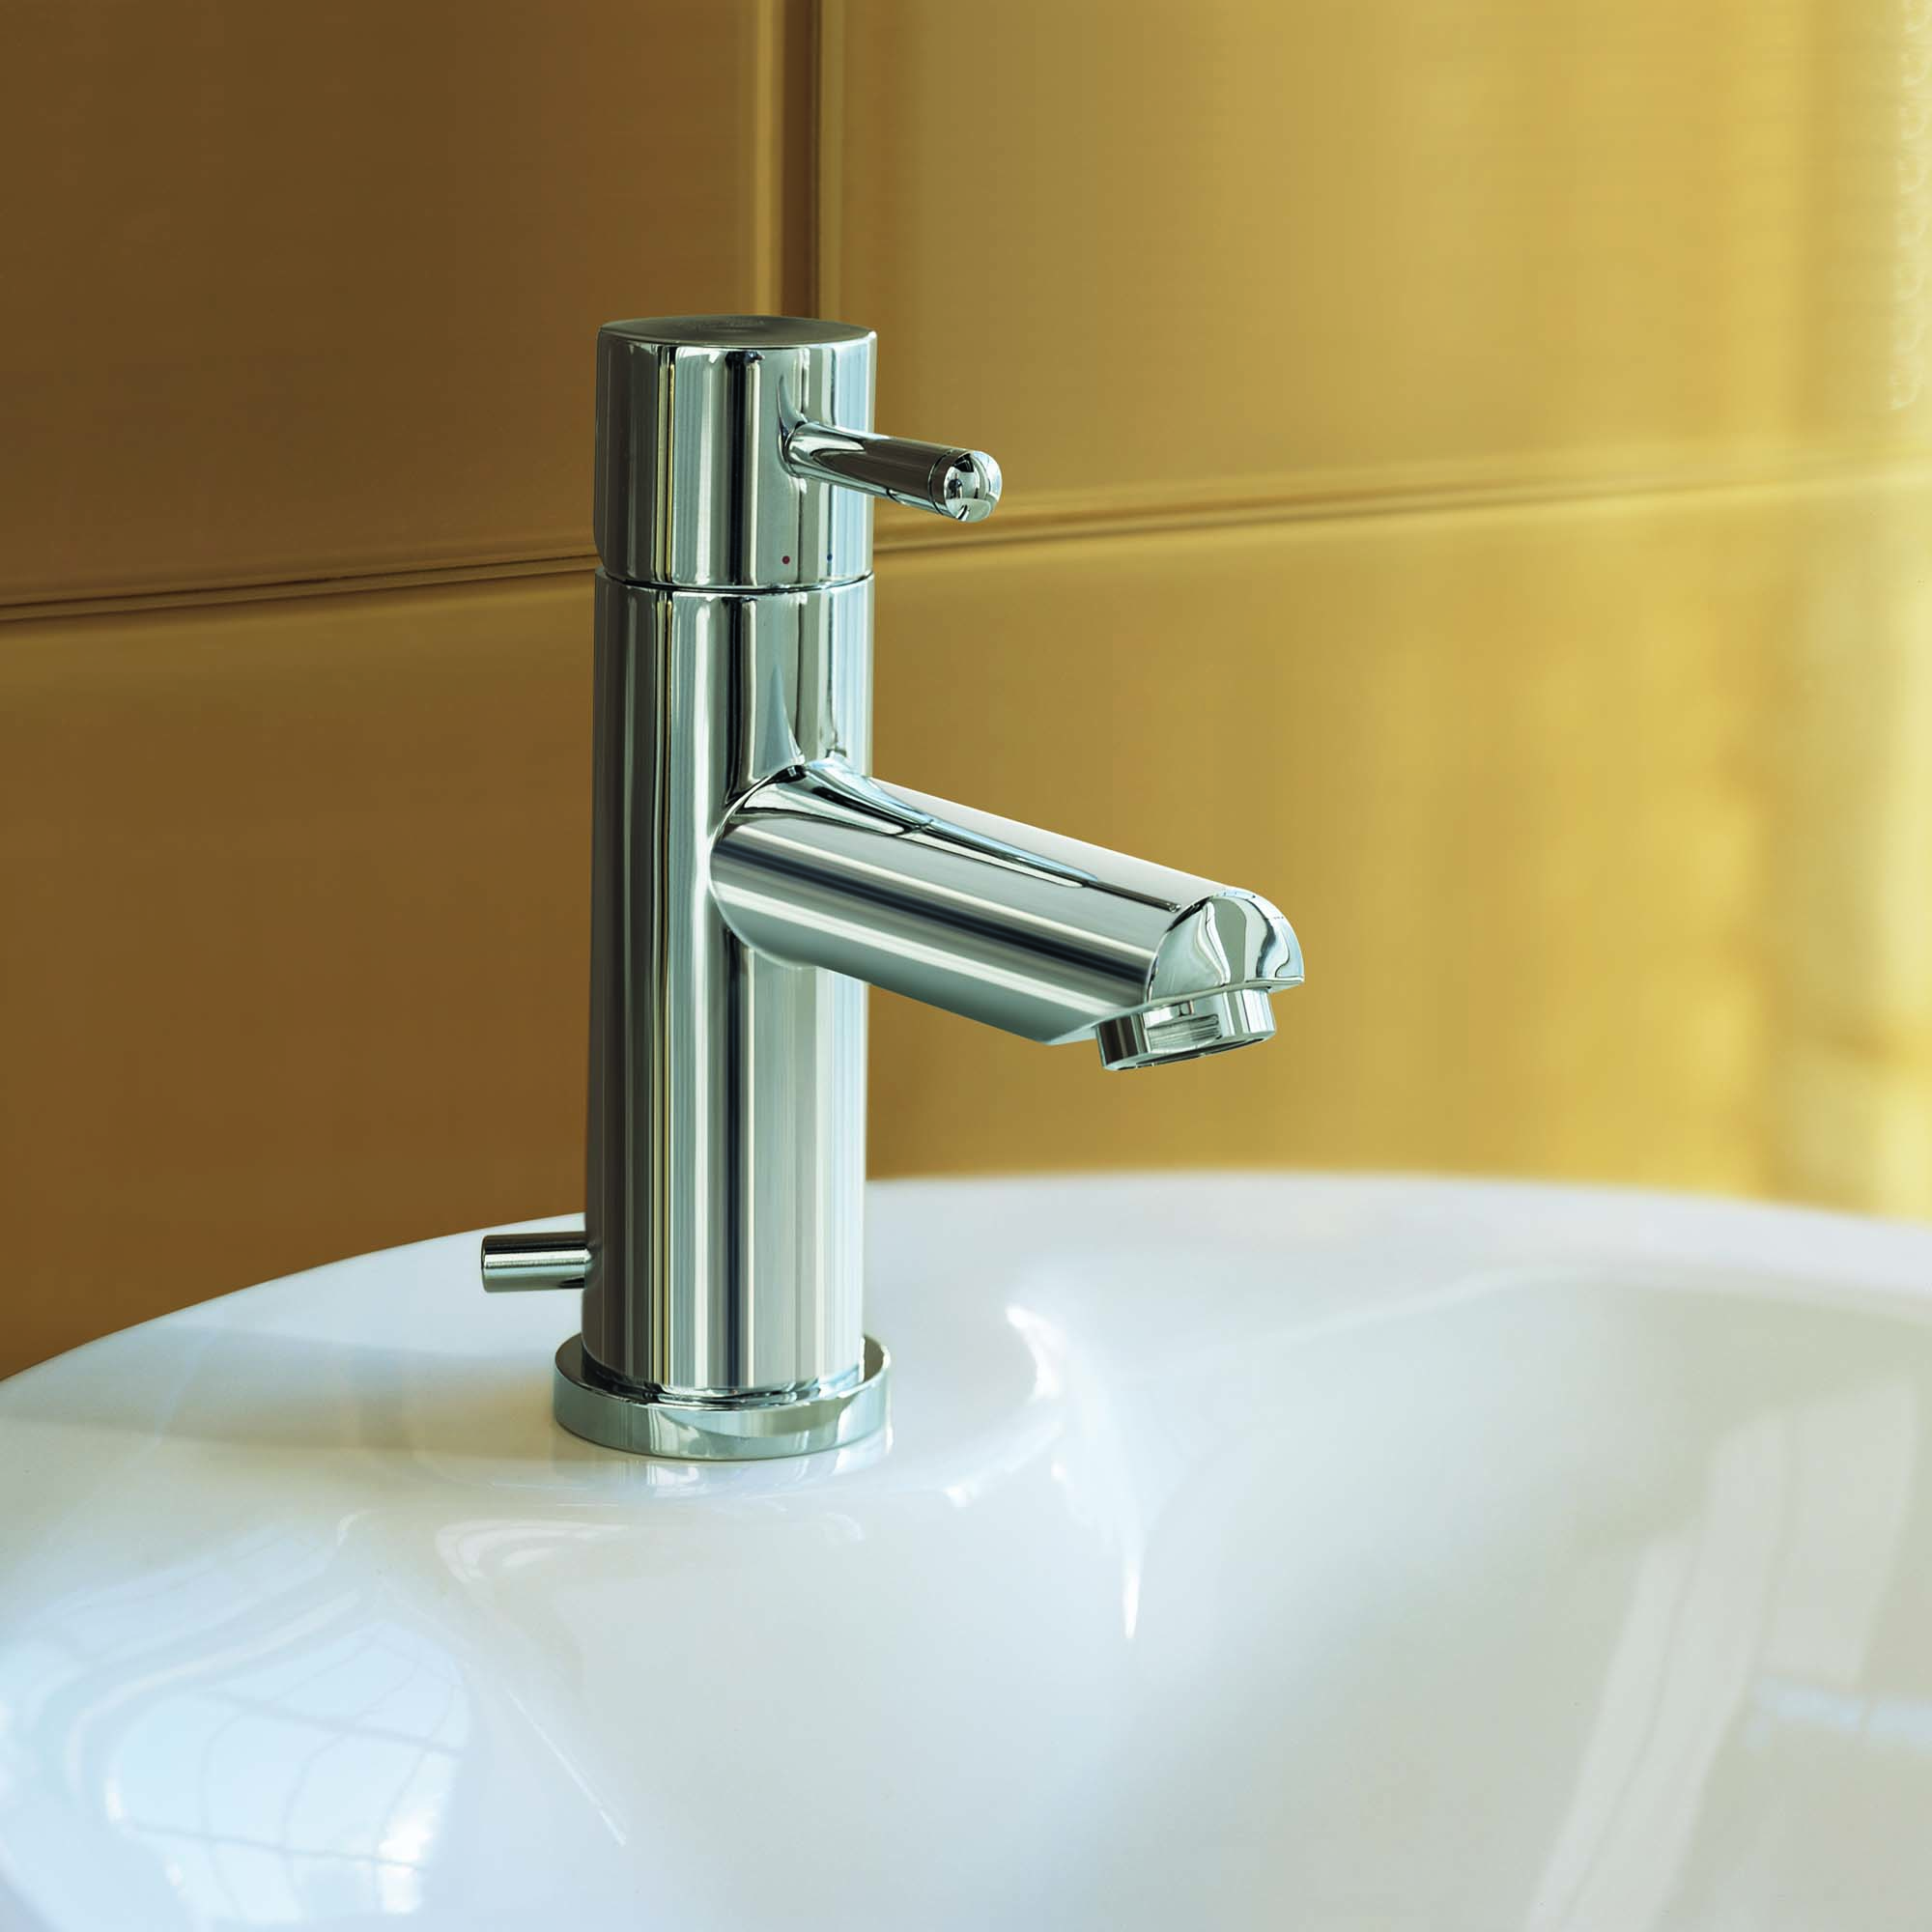 Serin® Robinet de salle de bain monotrou à poignée unique 1,2 gpm/4,5 L/min avec poignée à levier